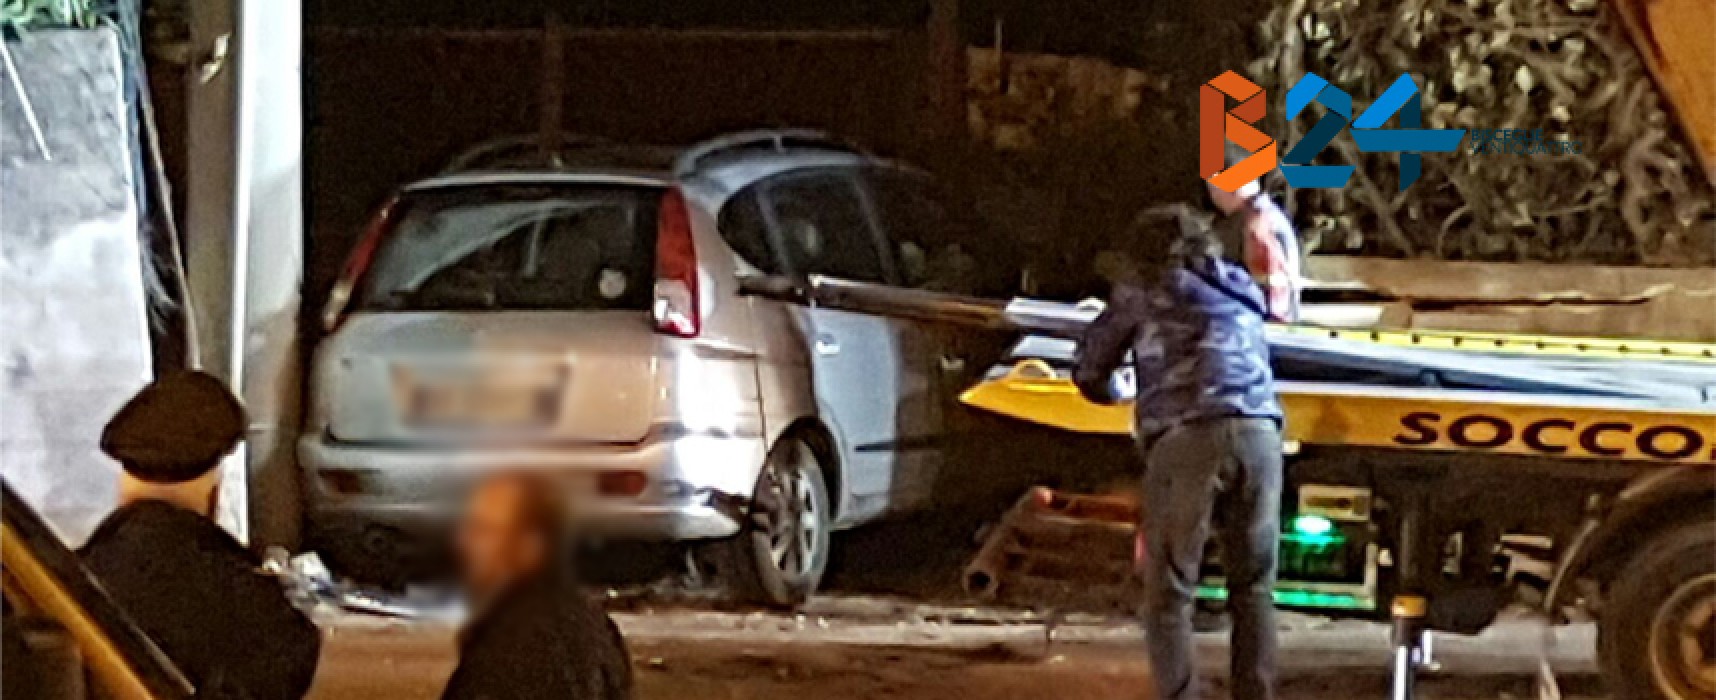 Incidente in via Imbriani, auto si incastra davanti a proprietà privata